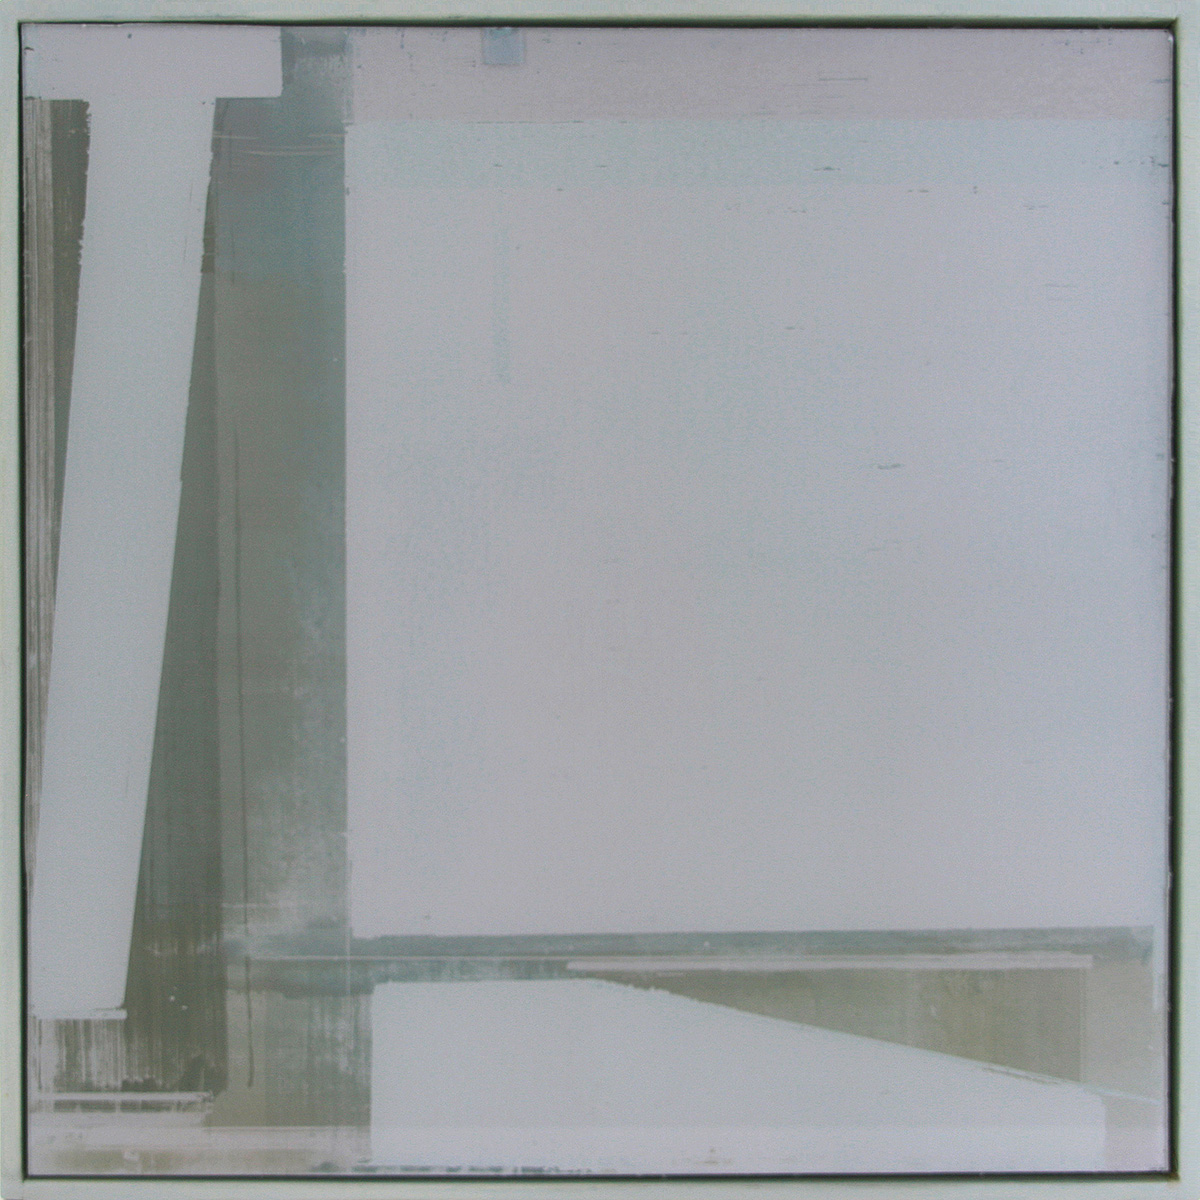 Auf-Glas-Malerei 5 / Schichtungen, 201630 x 30 cmPigment, grounded on glass, framed